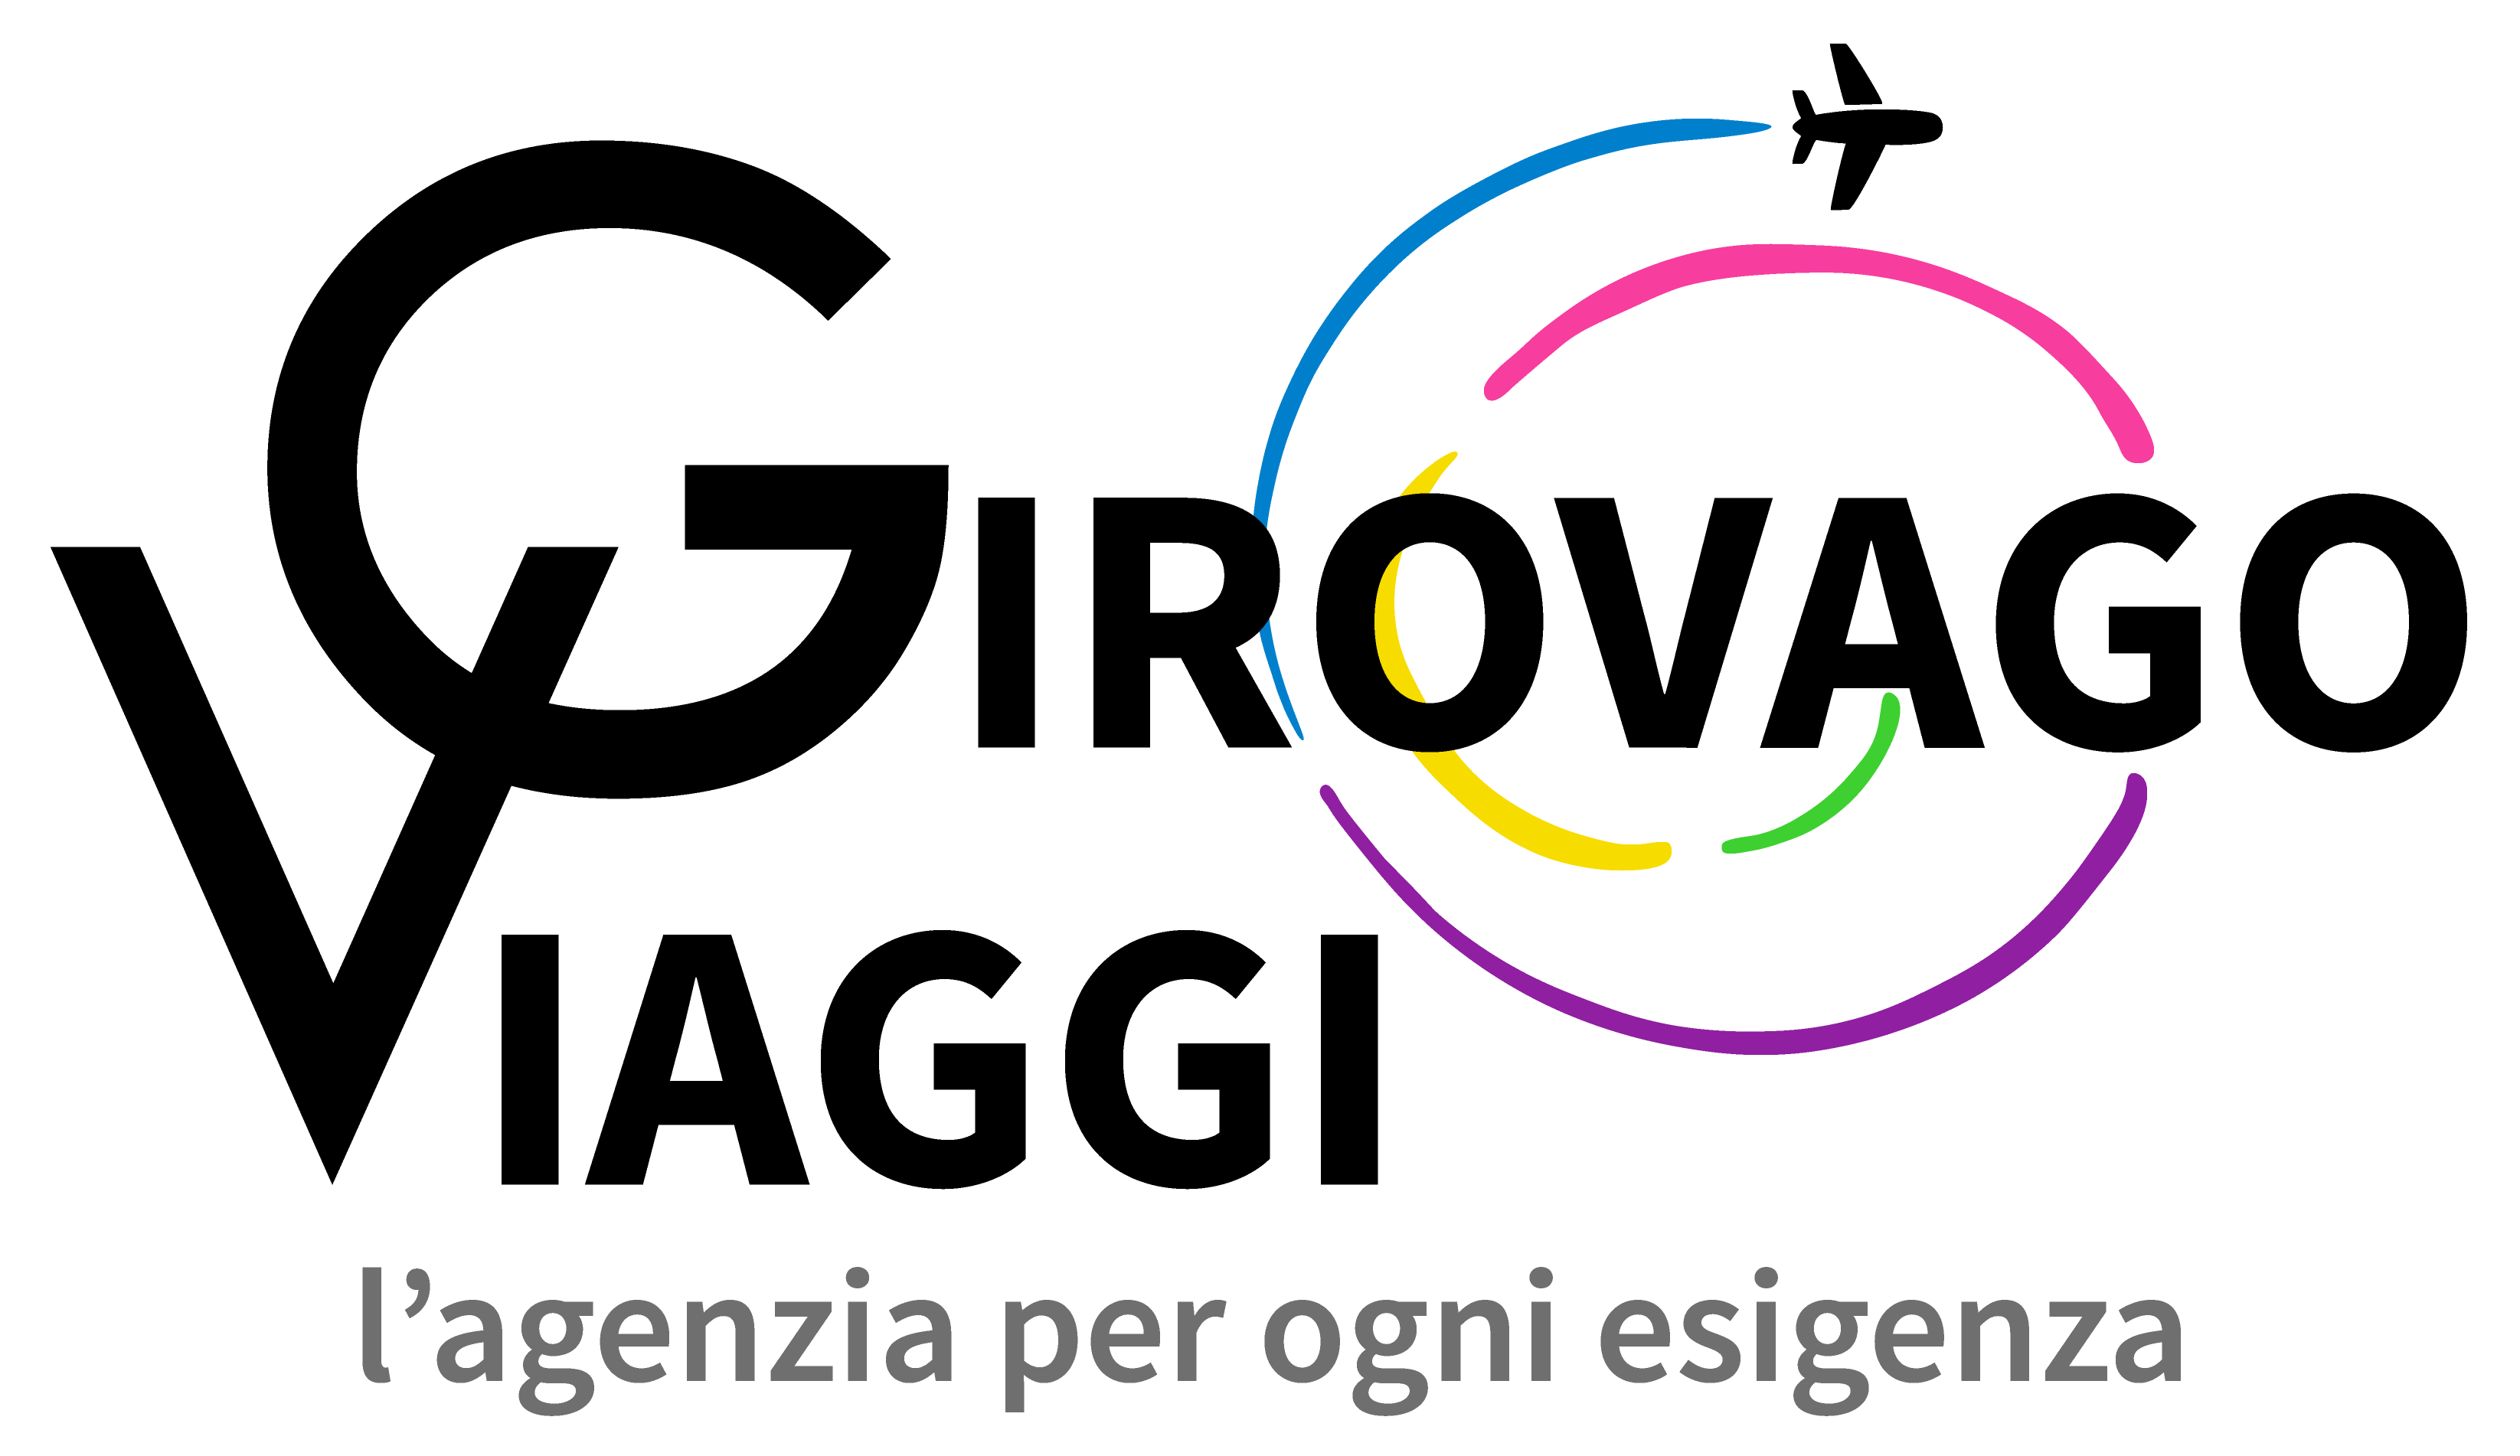 Girovago Viaggi - Tour Operator